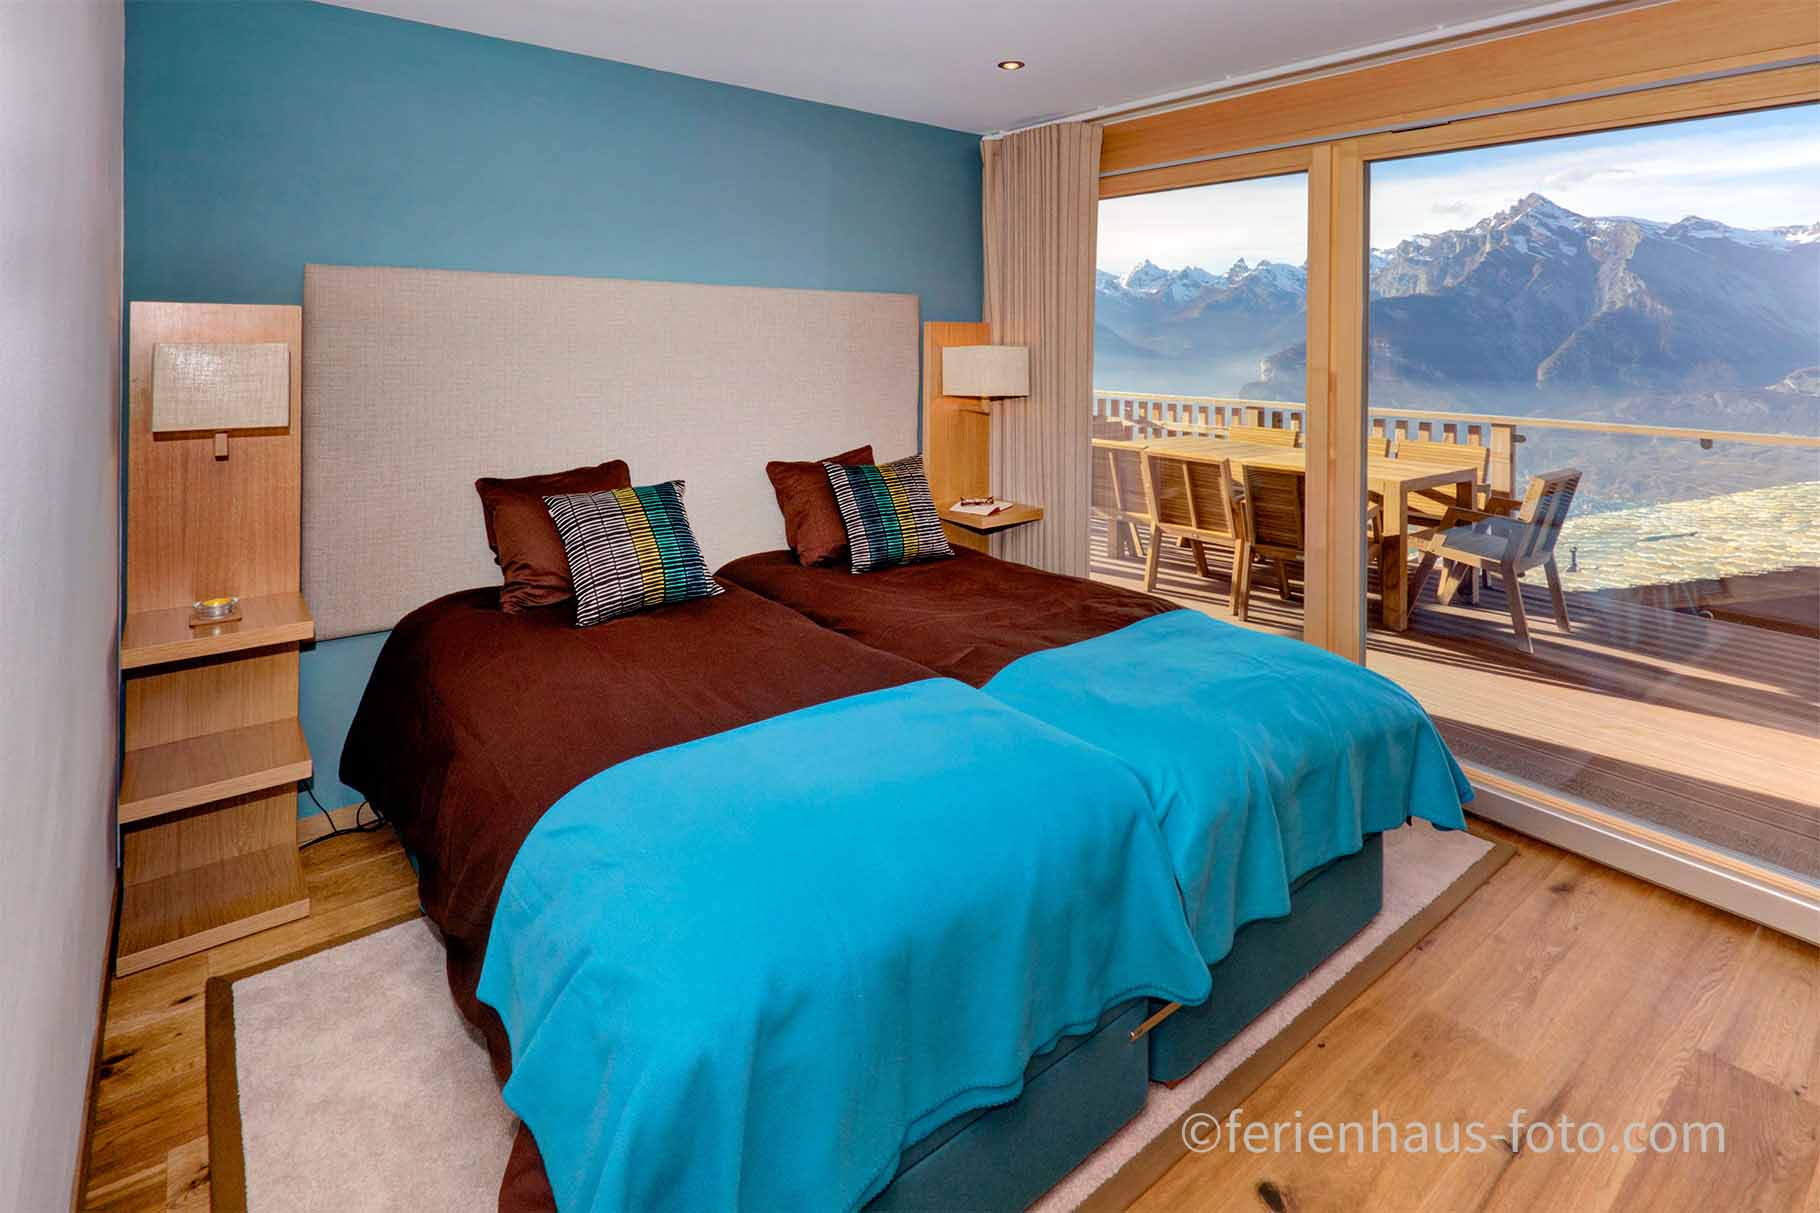 ferienhaus foto schlafzimmer in braun türkis und panoramafenster mit berge